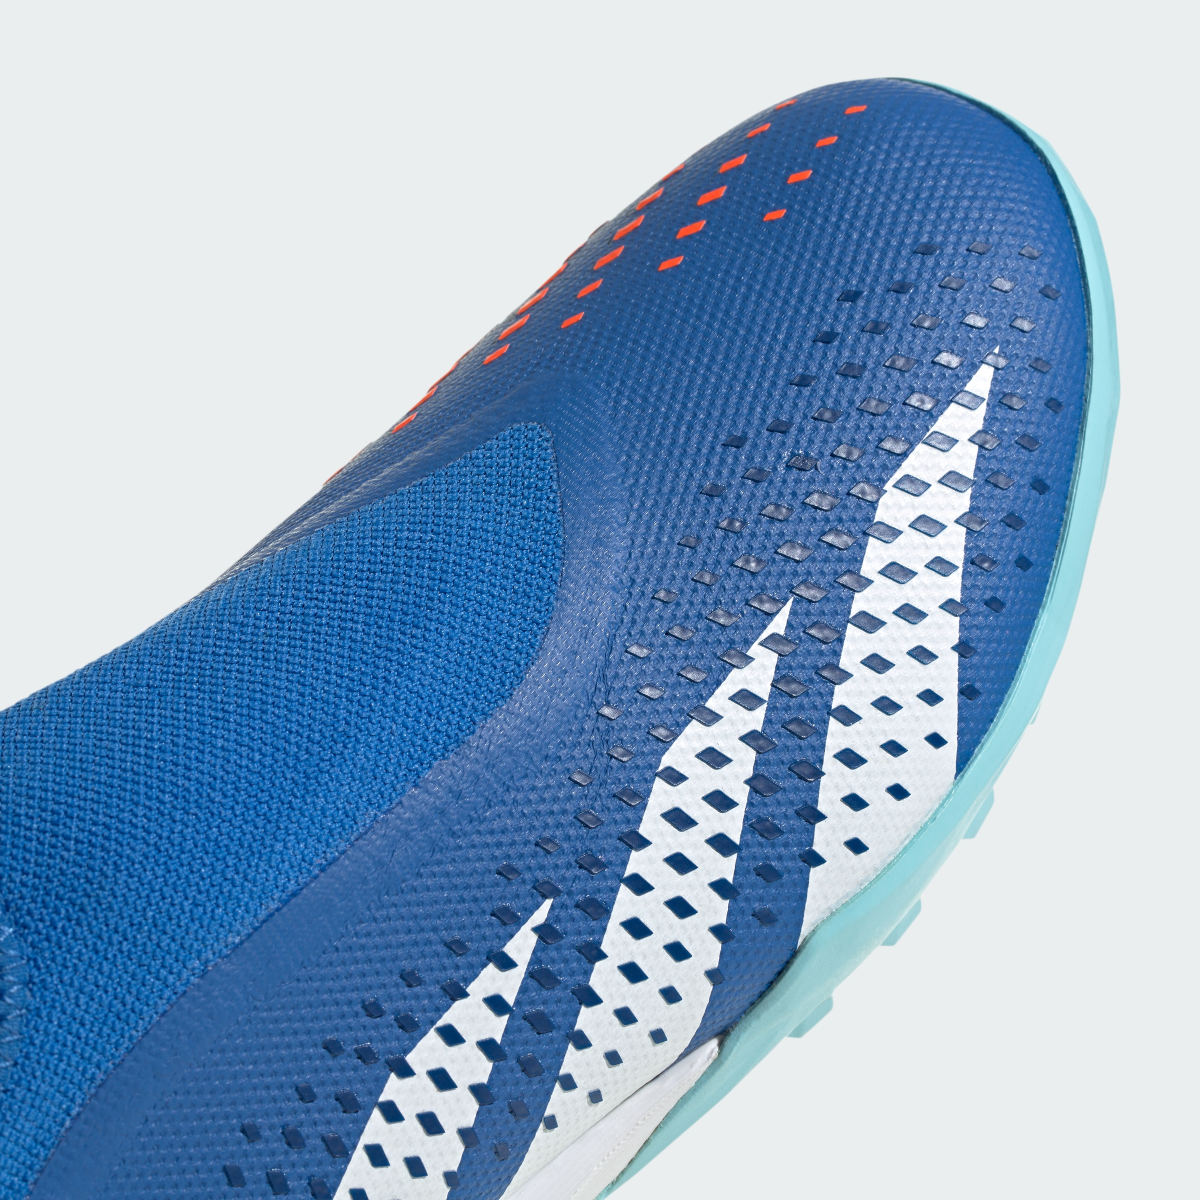 Adidas Calzado de Fútbol Predator Accuracy.3 Sin Cordones Pasto Sintético. 9